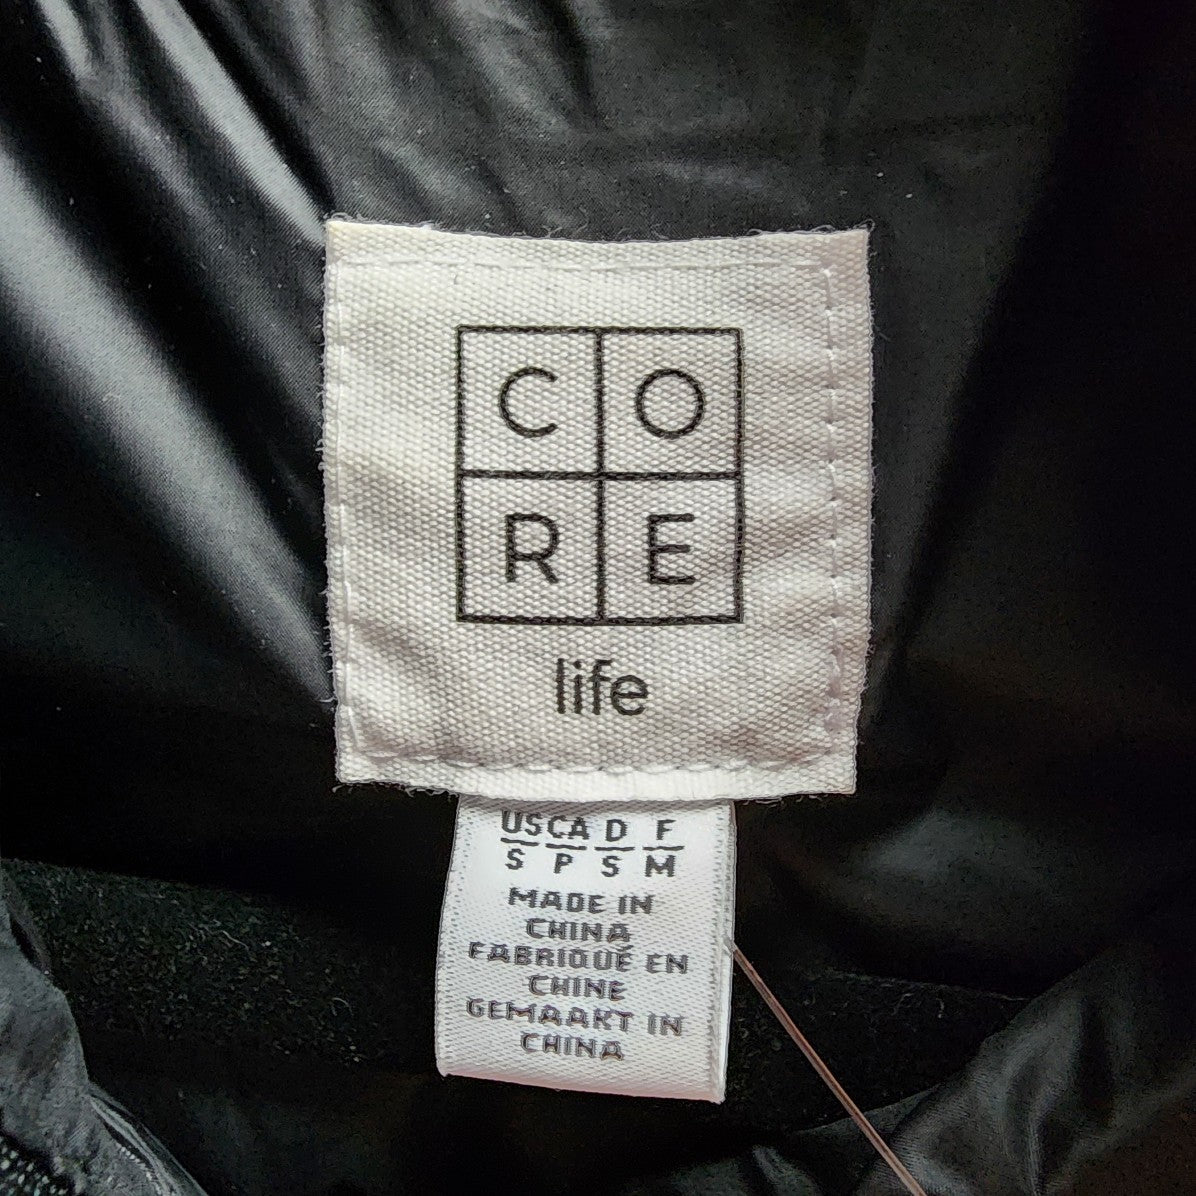 Core Life Black Packable Puffer Vest Size S